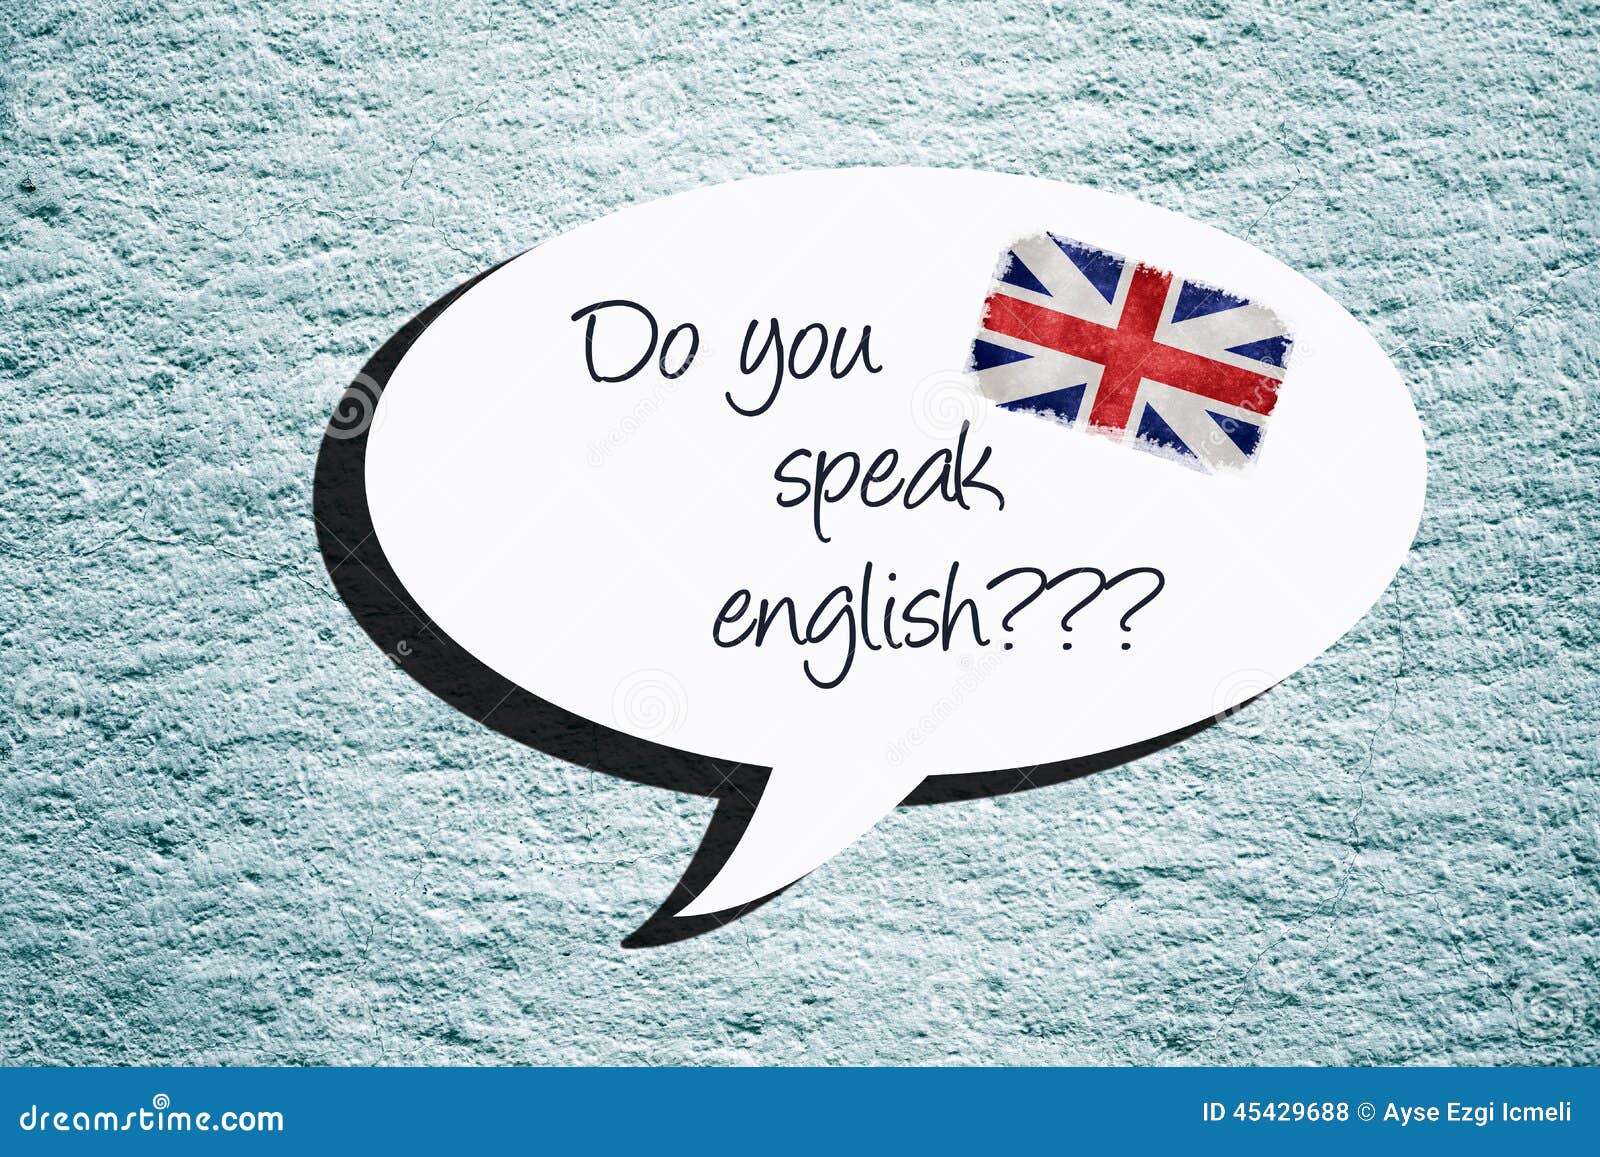 Do you speak english with me. Спик Инглиш. Speak English надпись. Ду ю спик Инглиш. Do you speak English картинки.